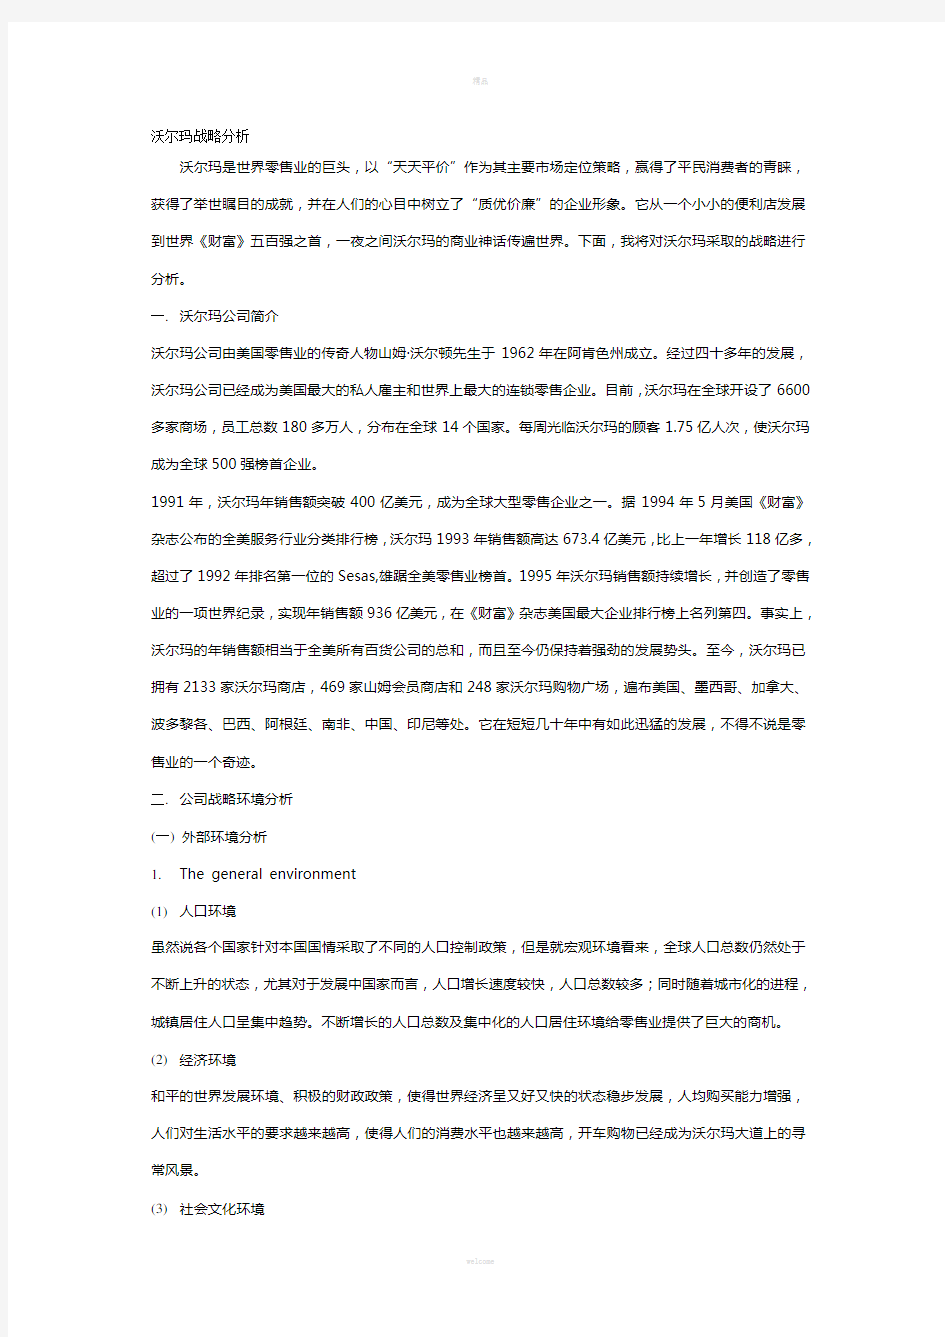 沃尔玛战略分析报告(中文版)